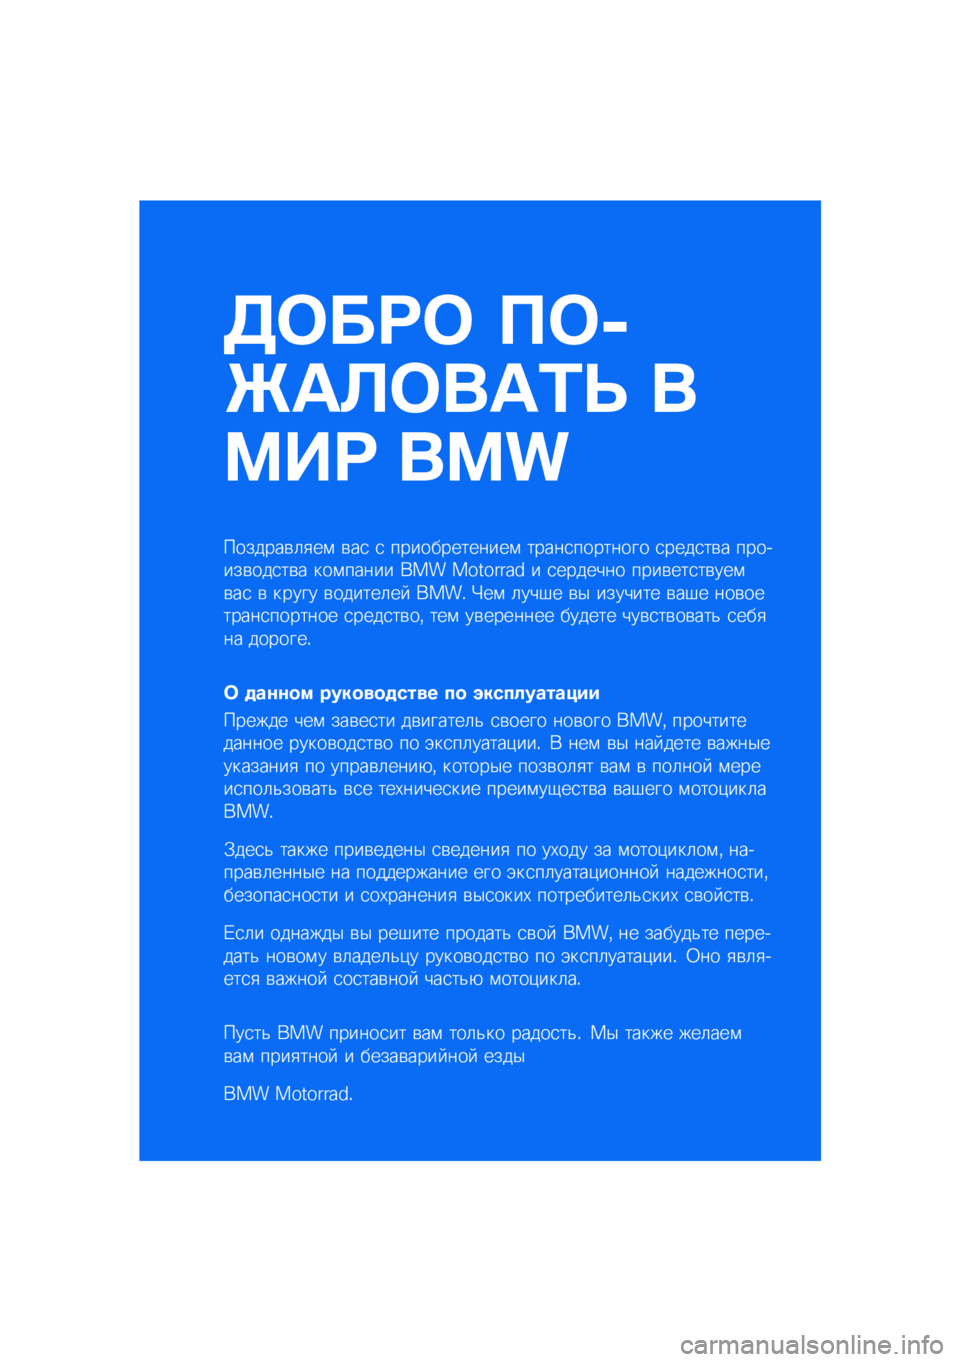 BMW MOTORRAD F 900 R 2020  Руководство по эксплуатации (in Russian) ����� ���
�\b�	�
���	�\f�
 �
��� ���
�������\b�	�
��\f �\b��
 �
 �������������\f �����
�������� �
����
��\b� �������\b���
��\b� ���\f�